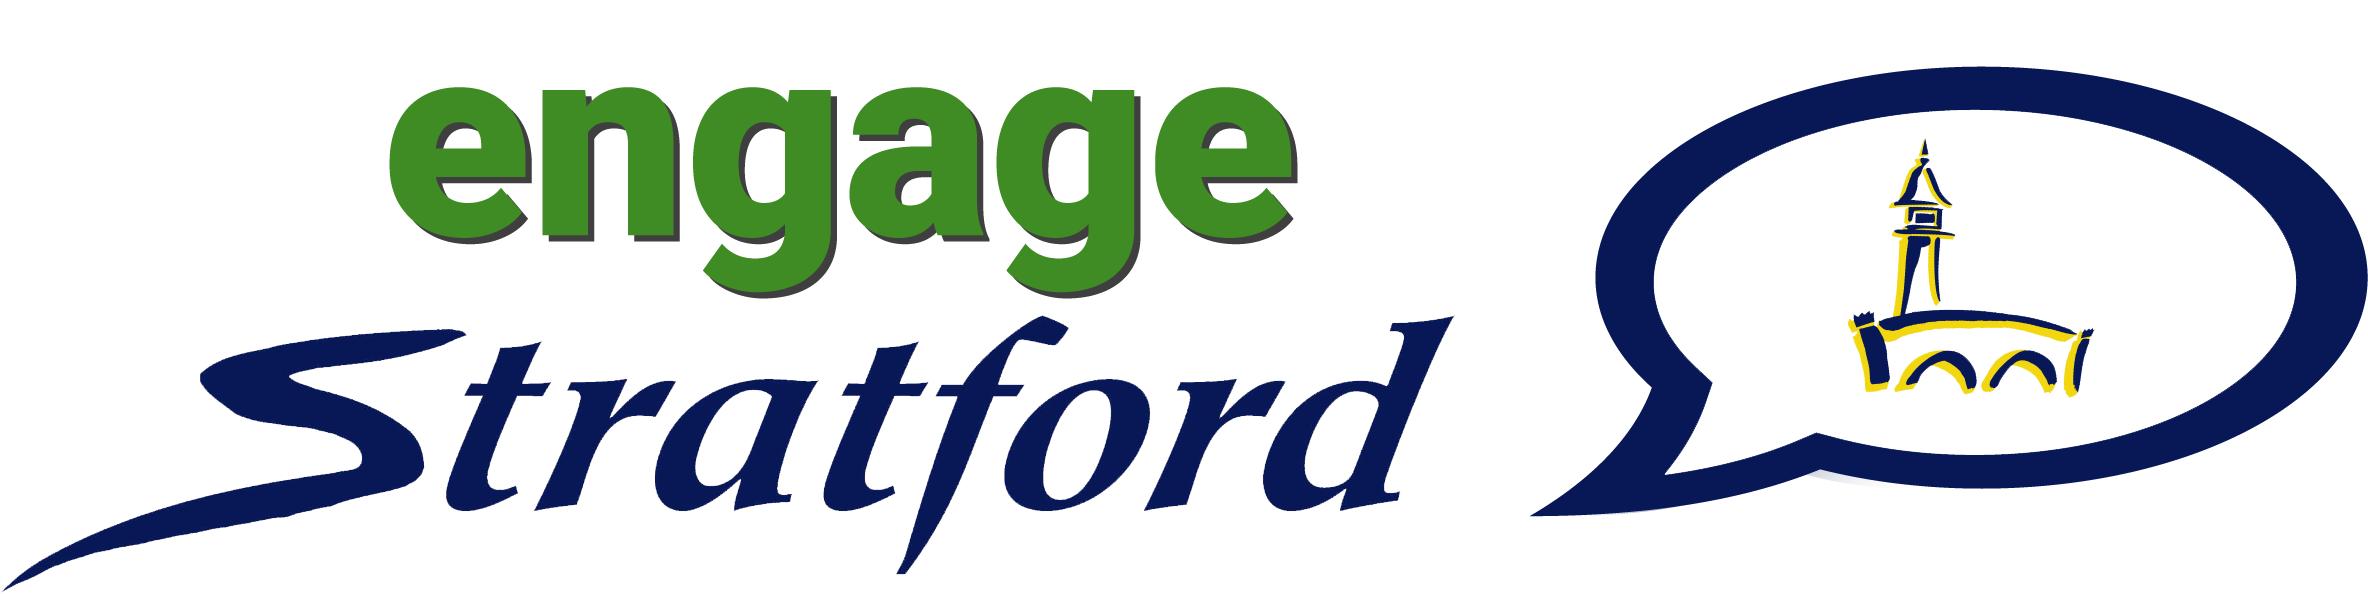 engage Stratford logo